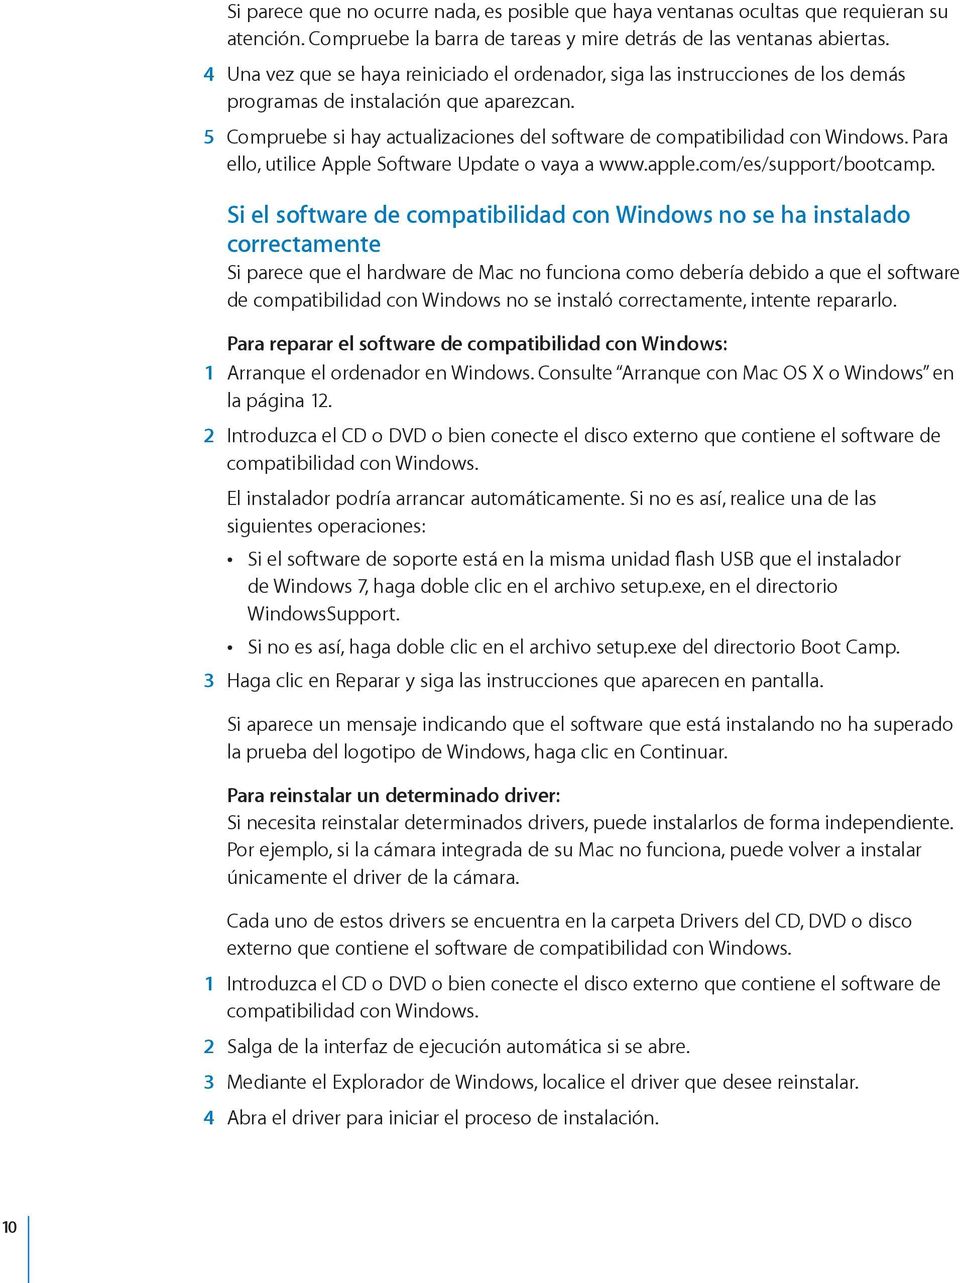 5 Compruebe si hay actualizaciones del software de compatibilidad con Windows. Para ello, utilice Apple Software Update o vaya a www.apple.com/es/support/bootcamp.